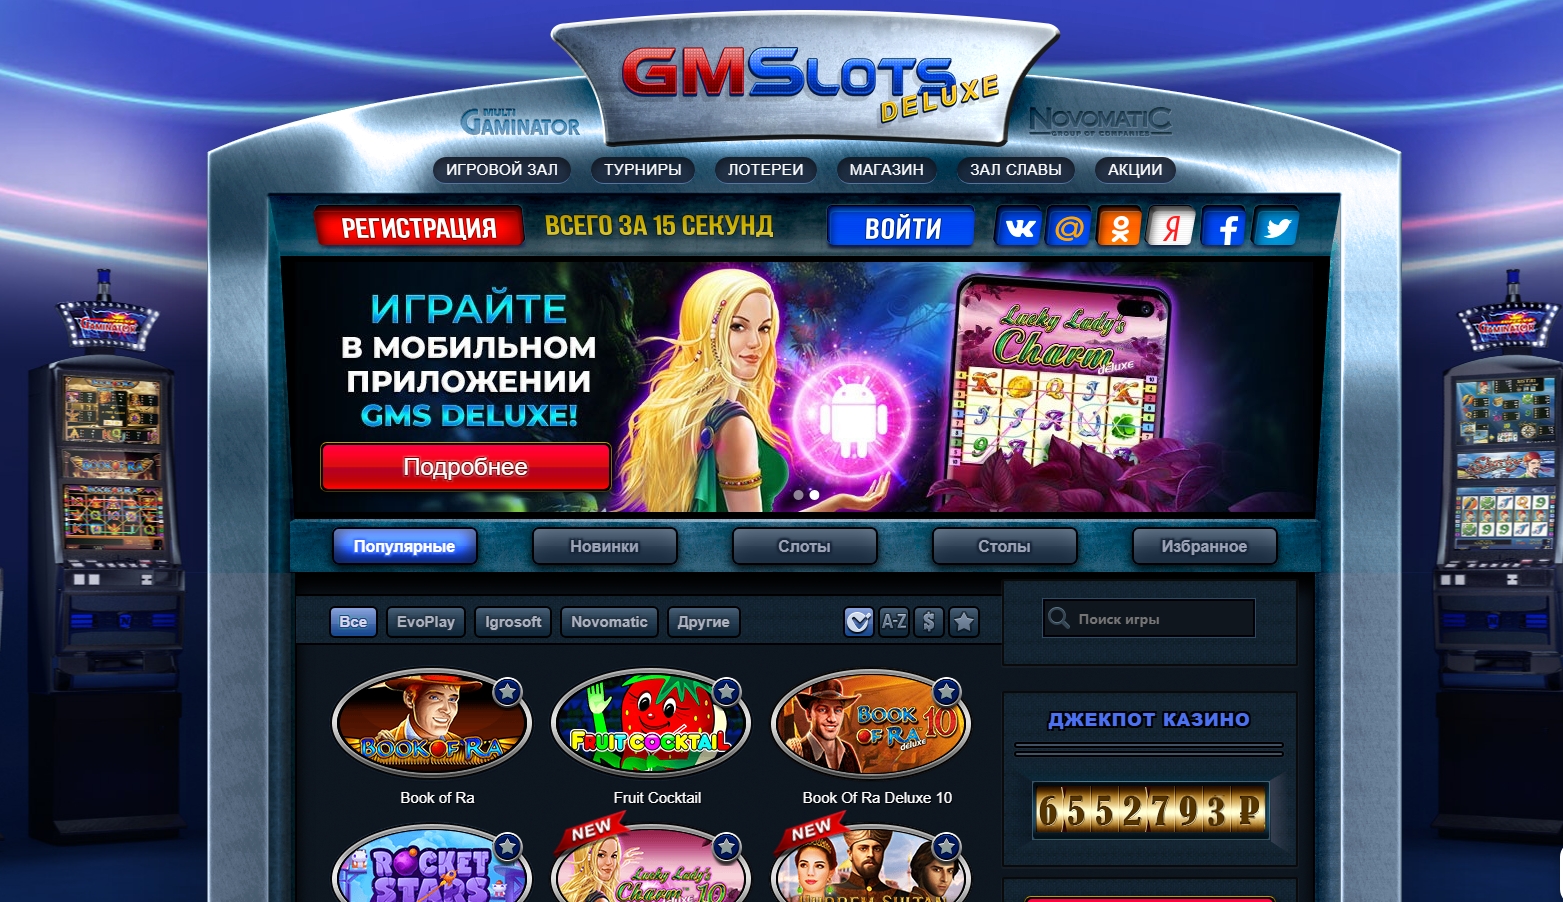 Gm slots игровые автоматы официальный сайт рейтинг слотов рф вулкан игровые автоматы промокод бездепозитный